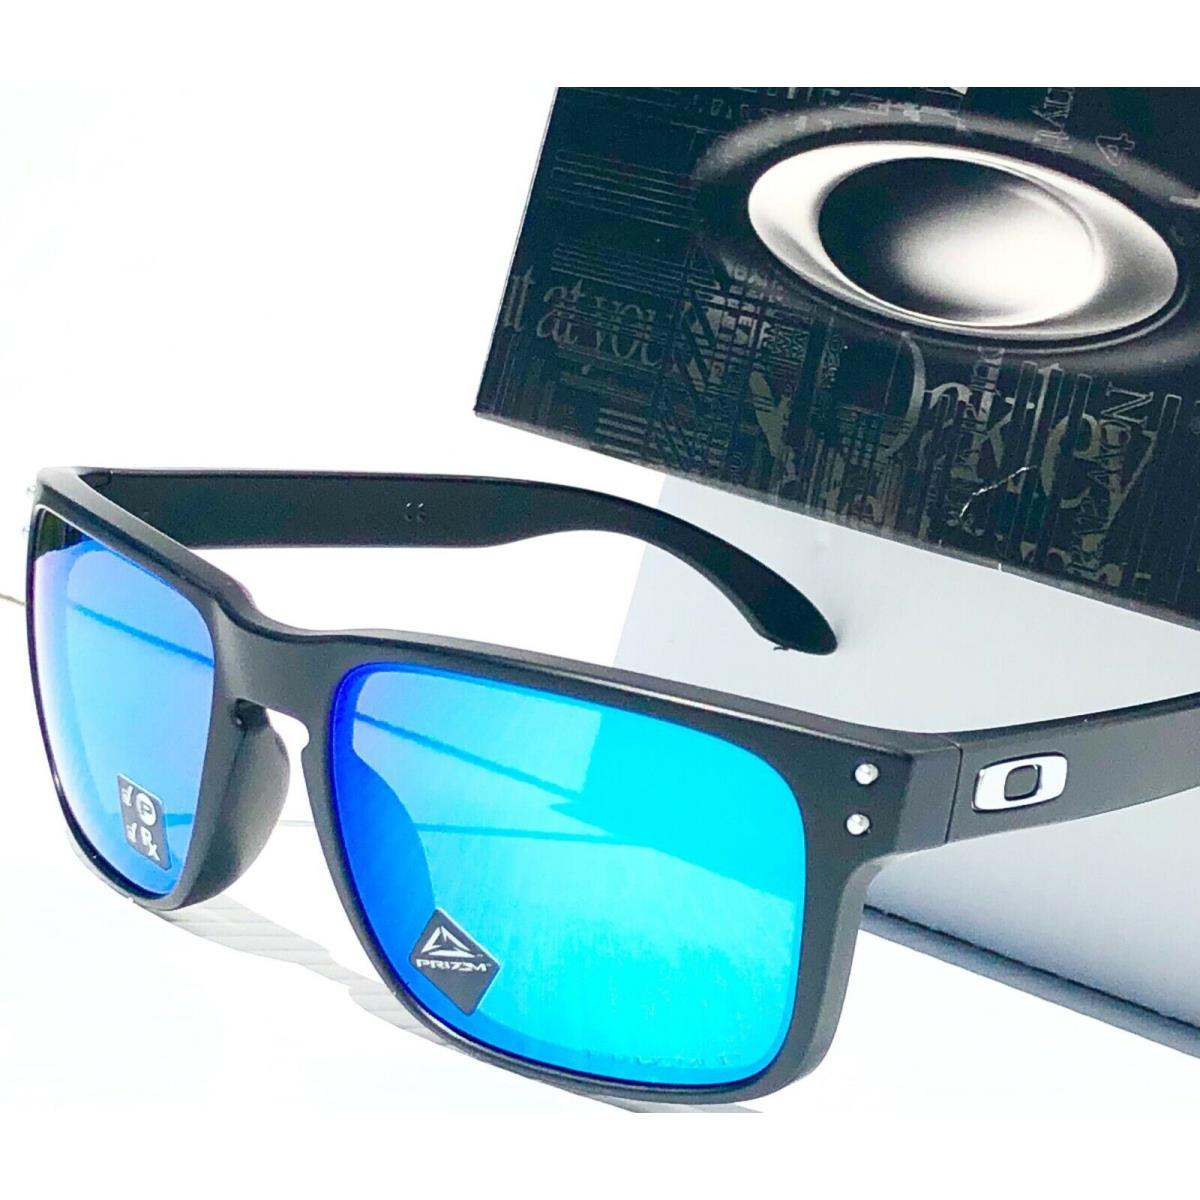 Oakley sunglasses Holbrook - Black Frame, Blue Lens 4